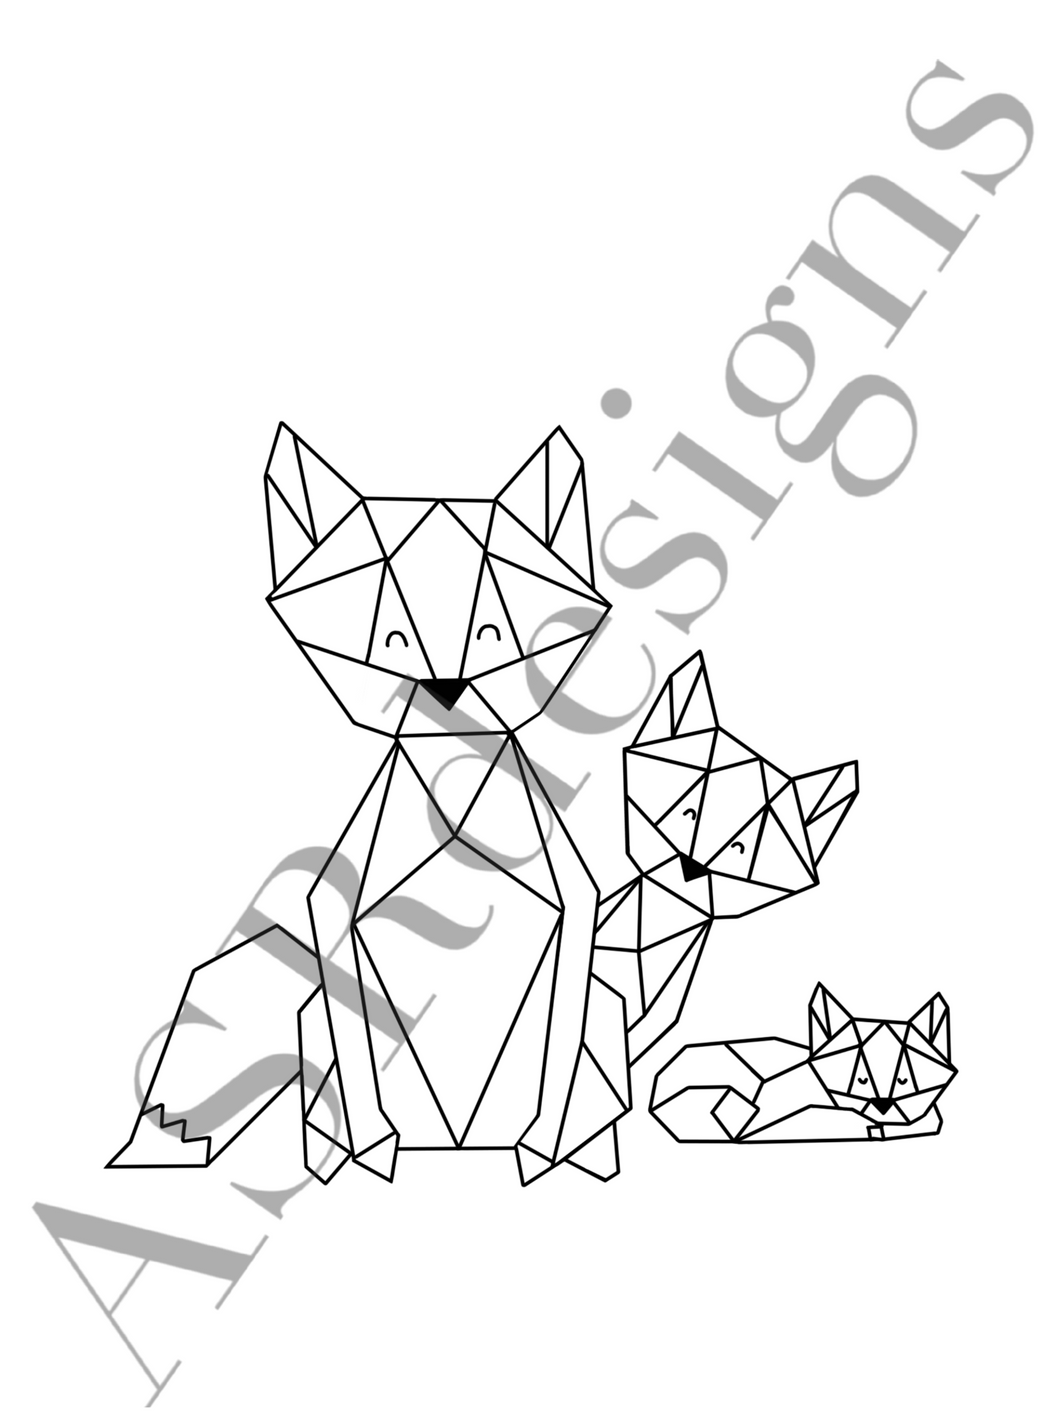 Lieve en hippe poster voor babykamer of kinderkamer van een (geometrische) vos  met vosjes in zwart wit